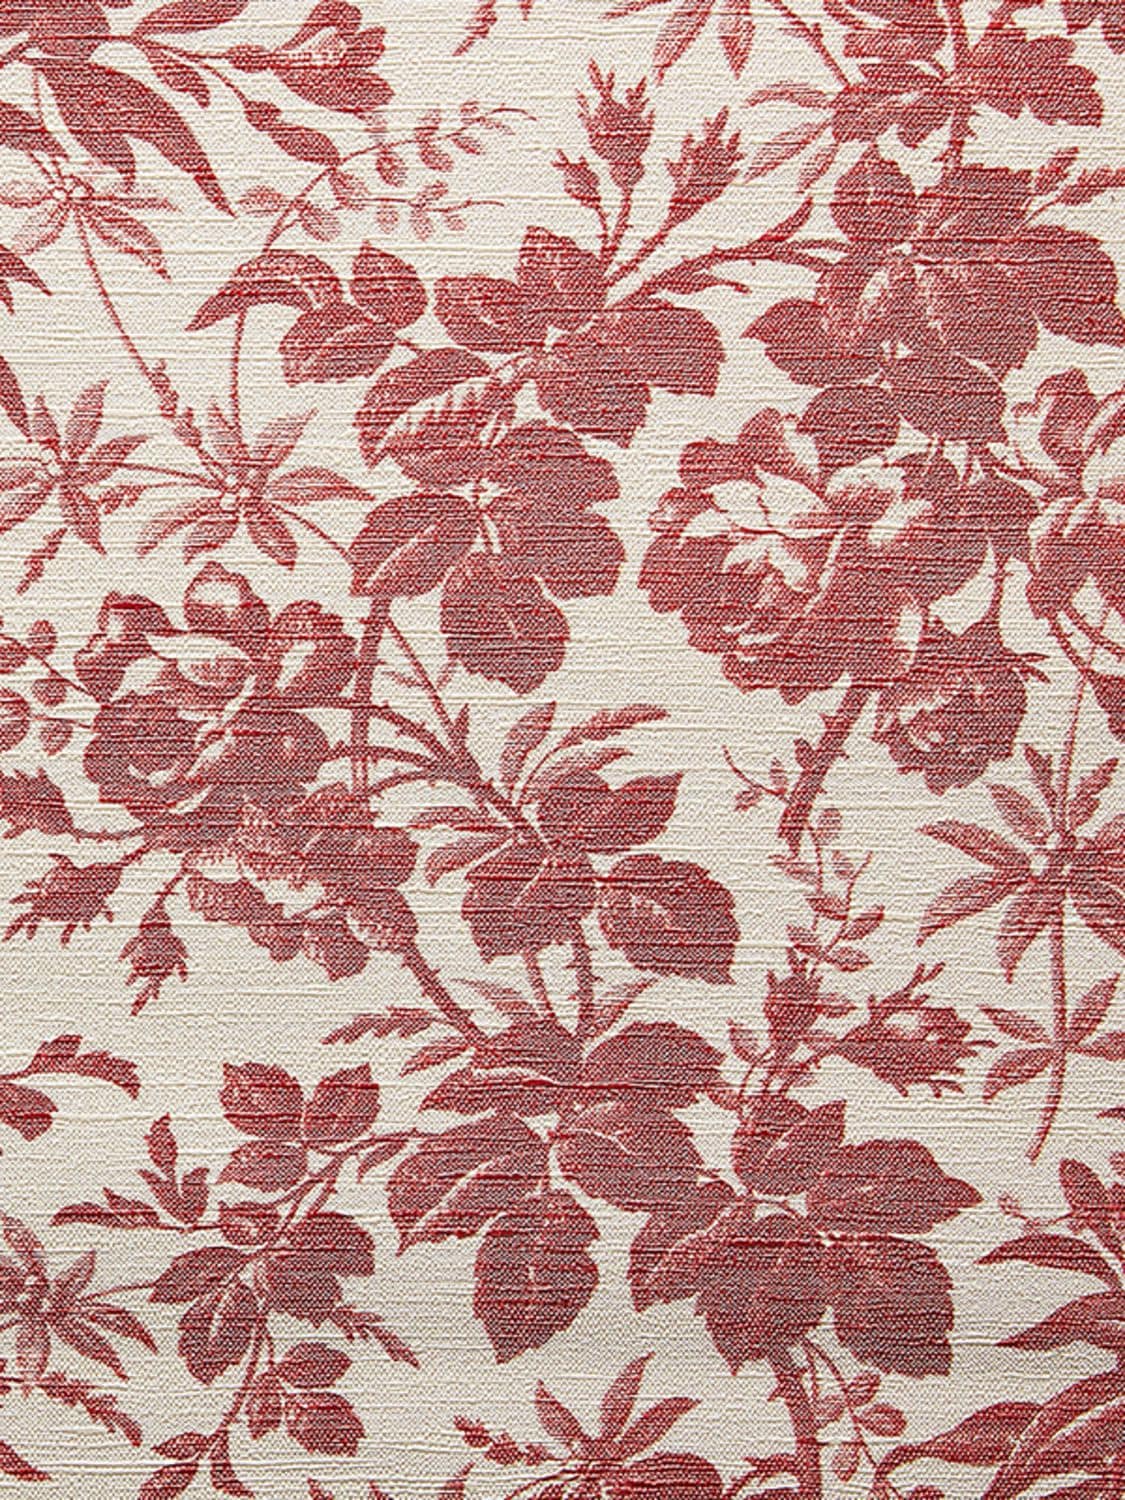 Herbarium print wallpaper